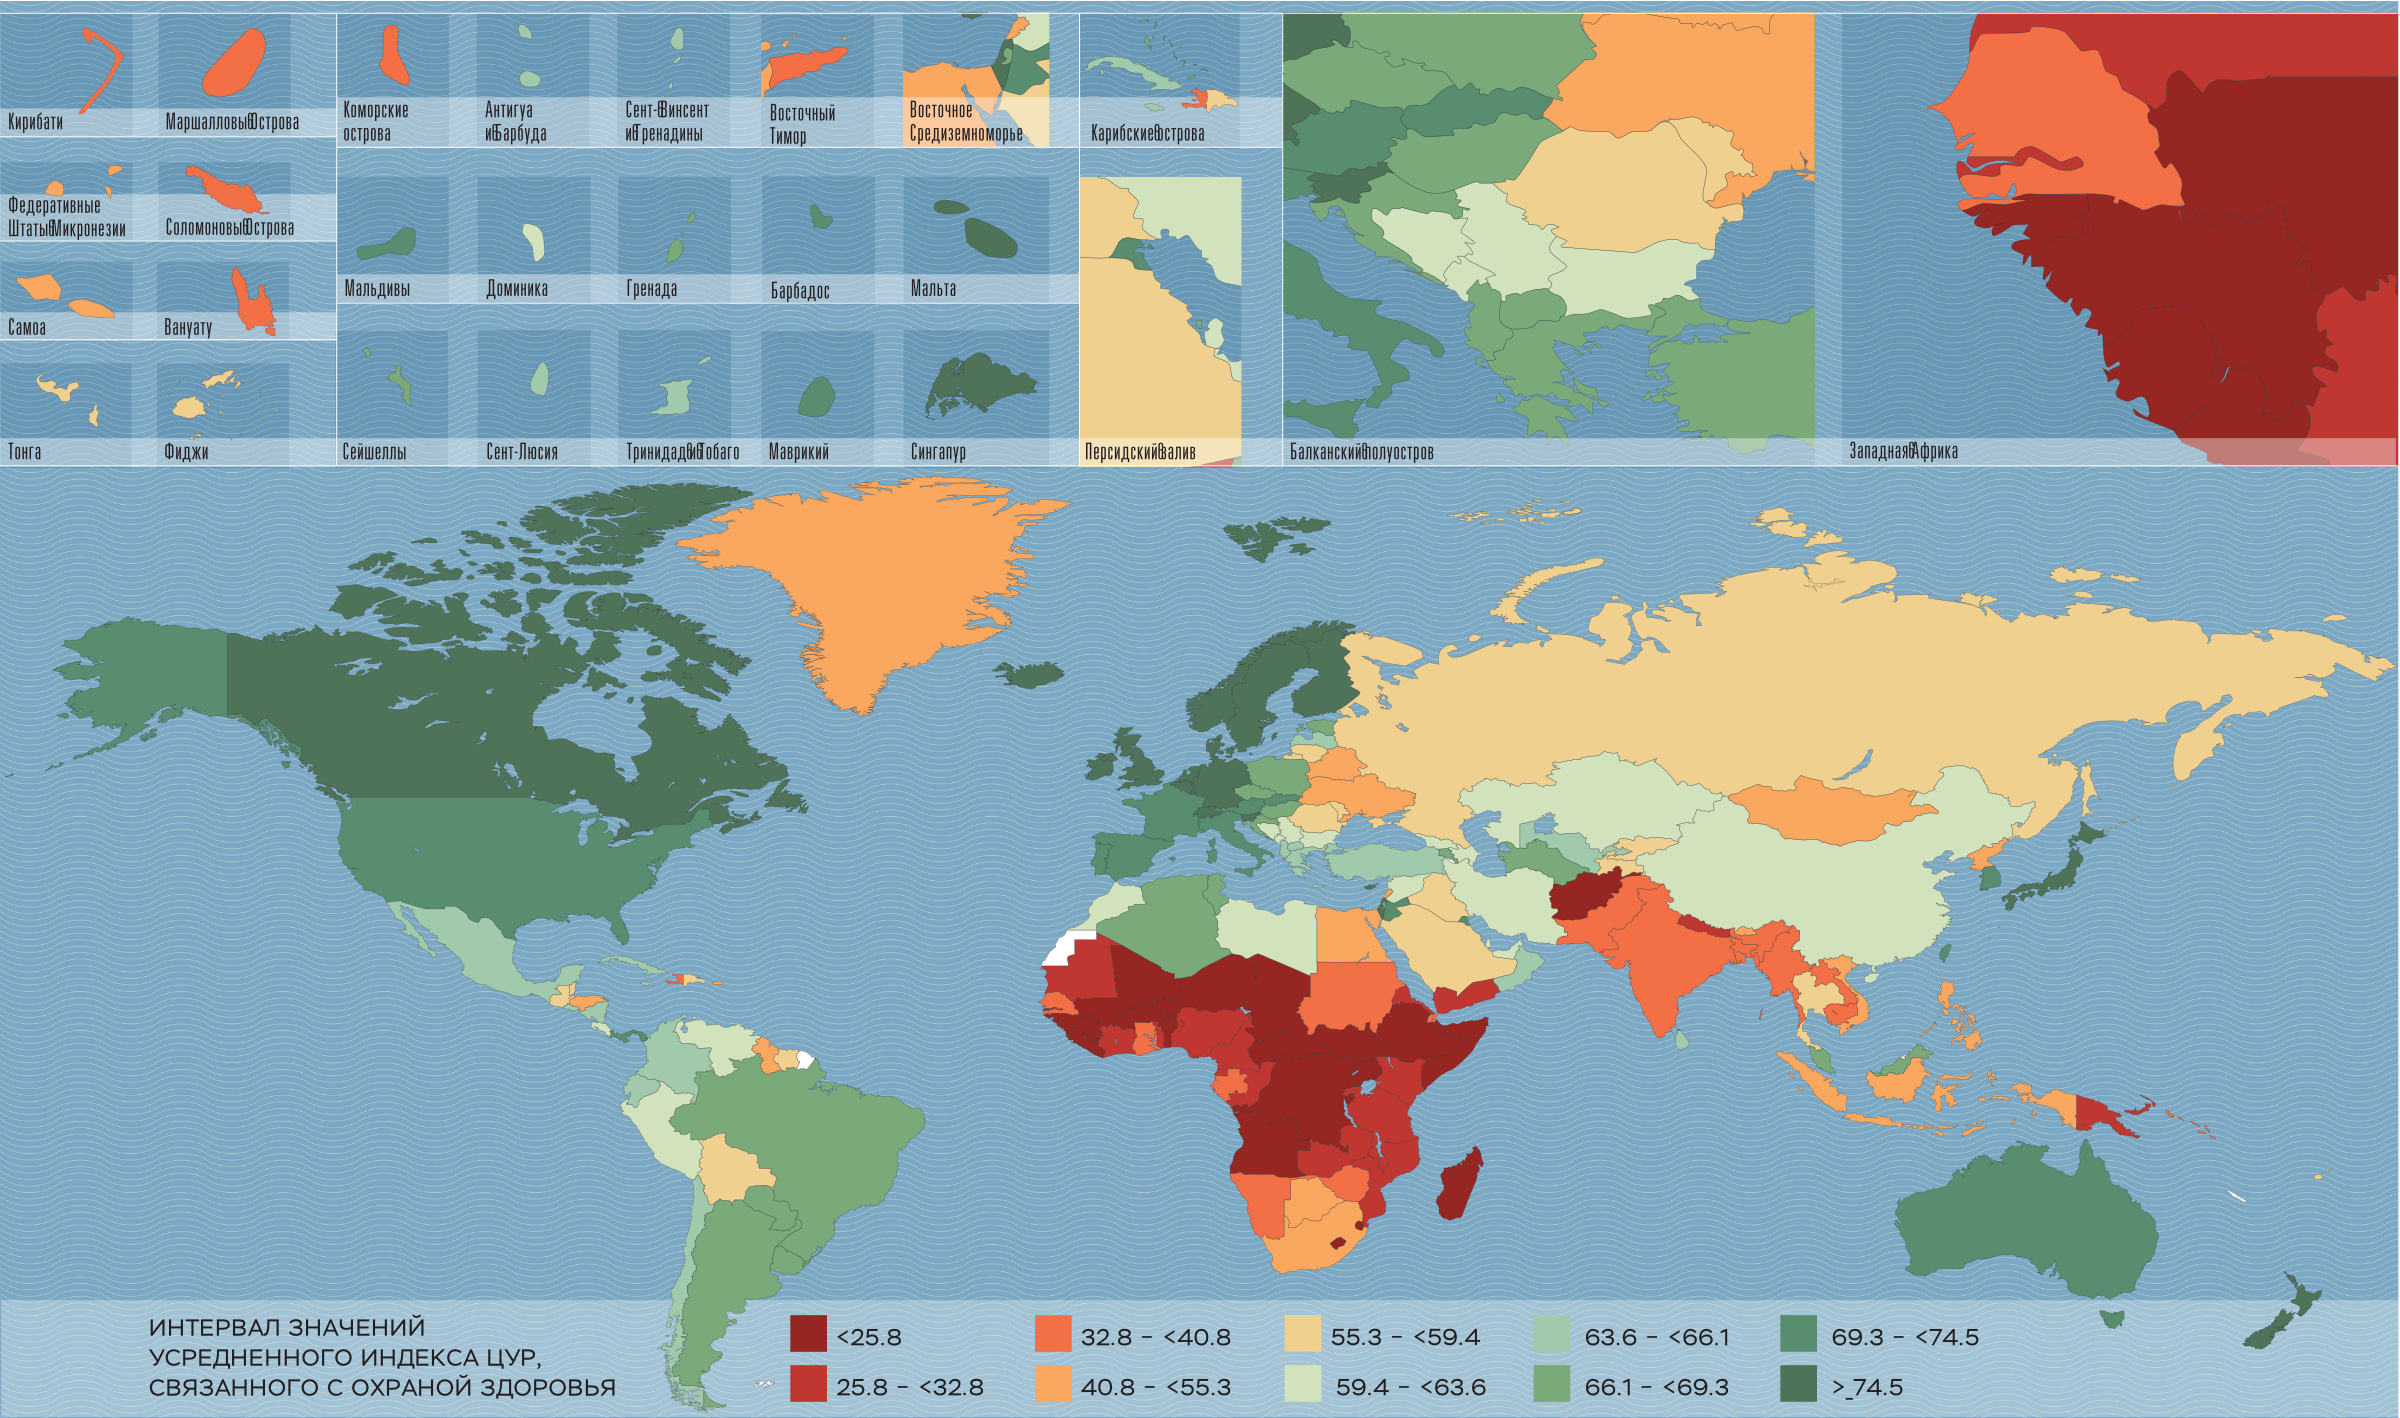 Значение усредненного индекса ЦУР, связанного с охраной здоровья, в зависимости от страны